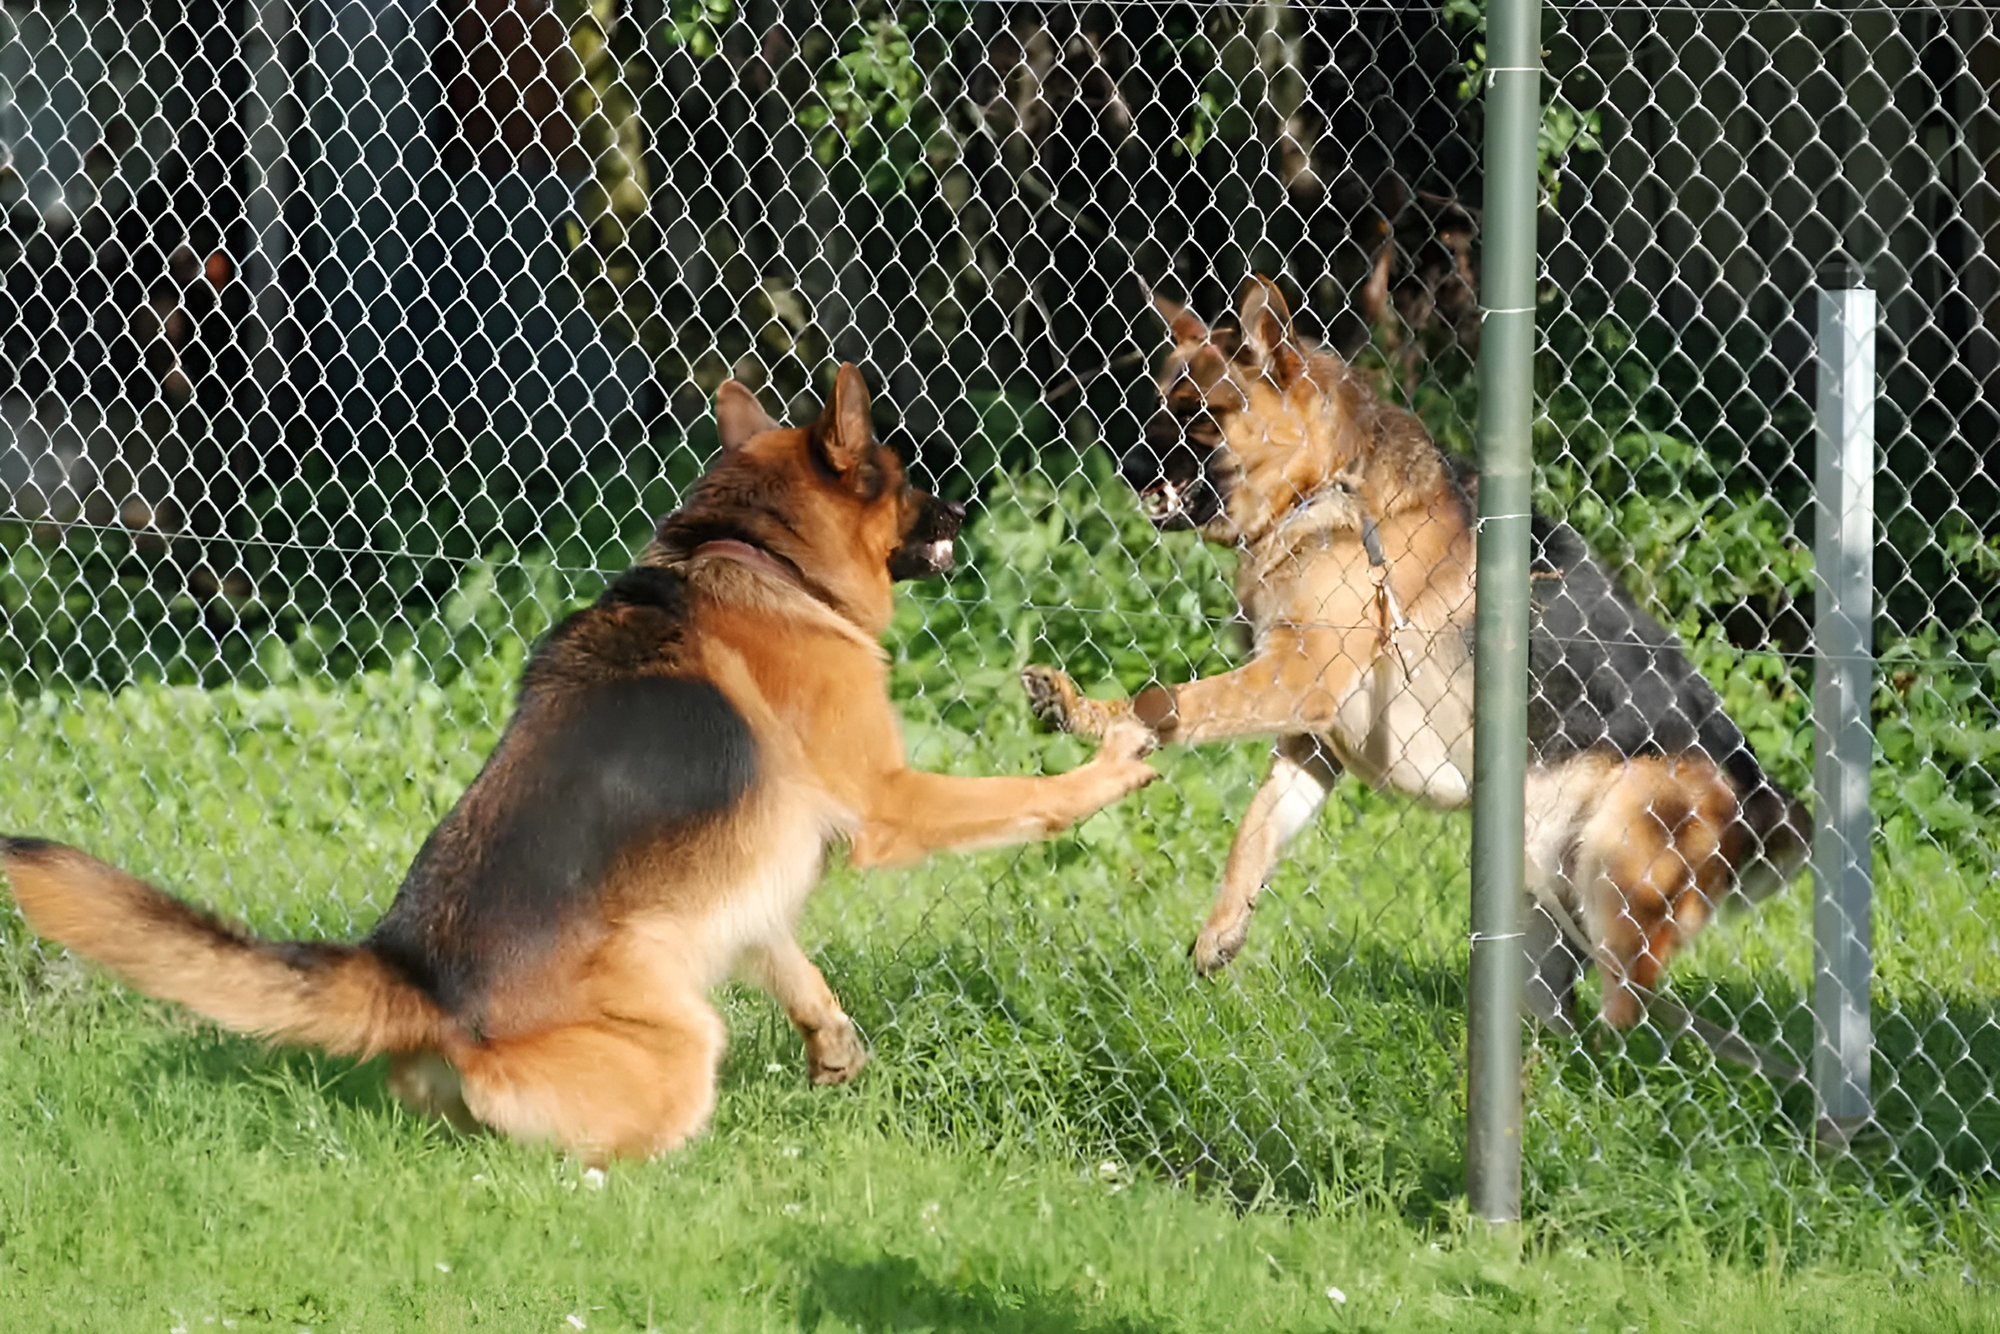 Собаки показывают, что готовы драться, но уберешь забор — утихомирятся. Если же одна из собак действительно отстаивает границы — атака неизбежна. Поэтому экспериментировать со встречами у забора не стоит. Источник: worldofdogz.com